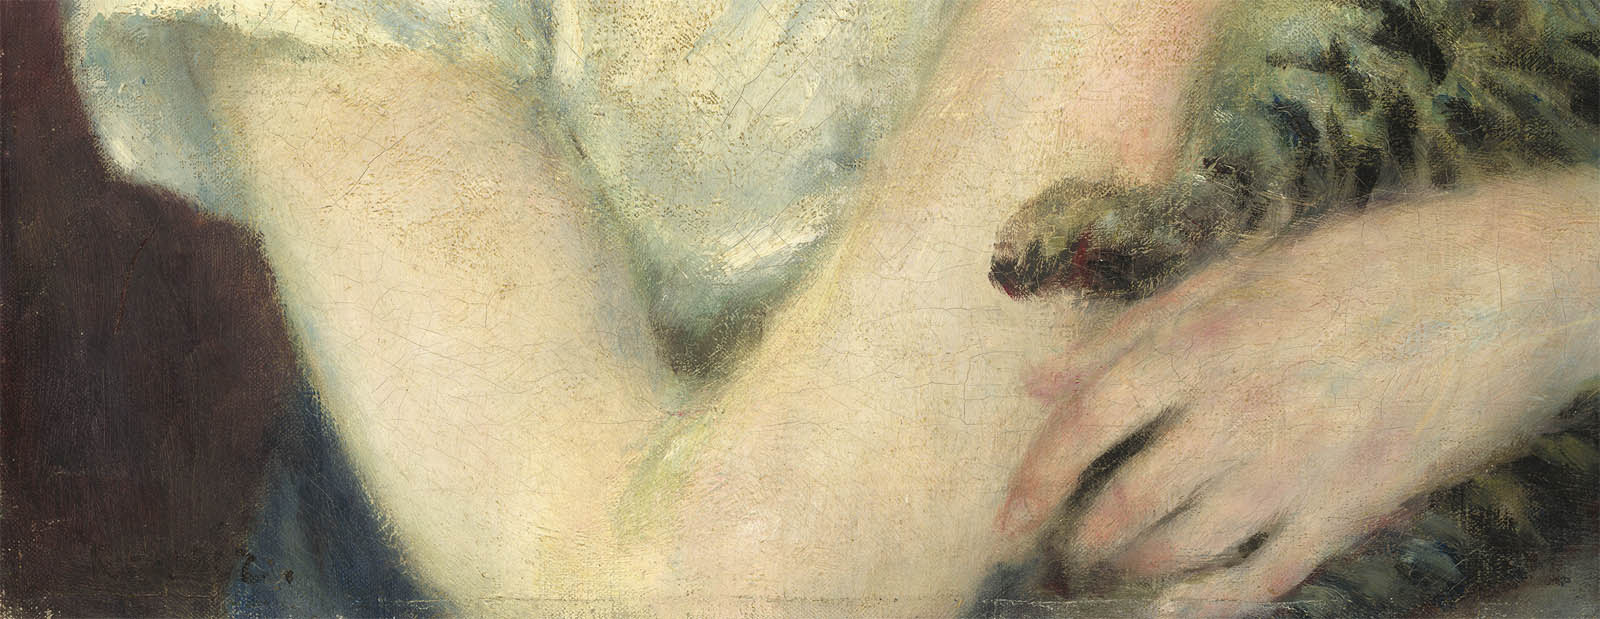 Pierre+Auguste+Renoir-1841-1-19 (242).jpg